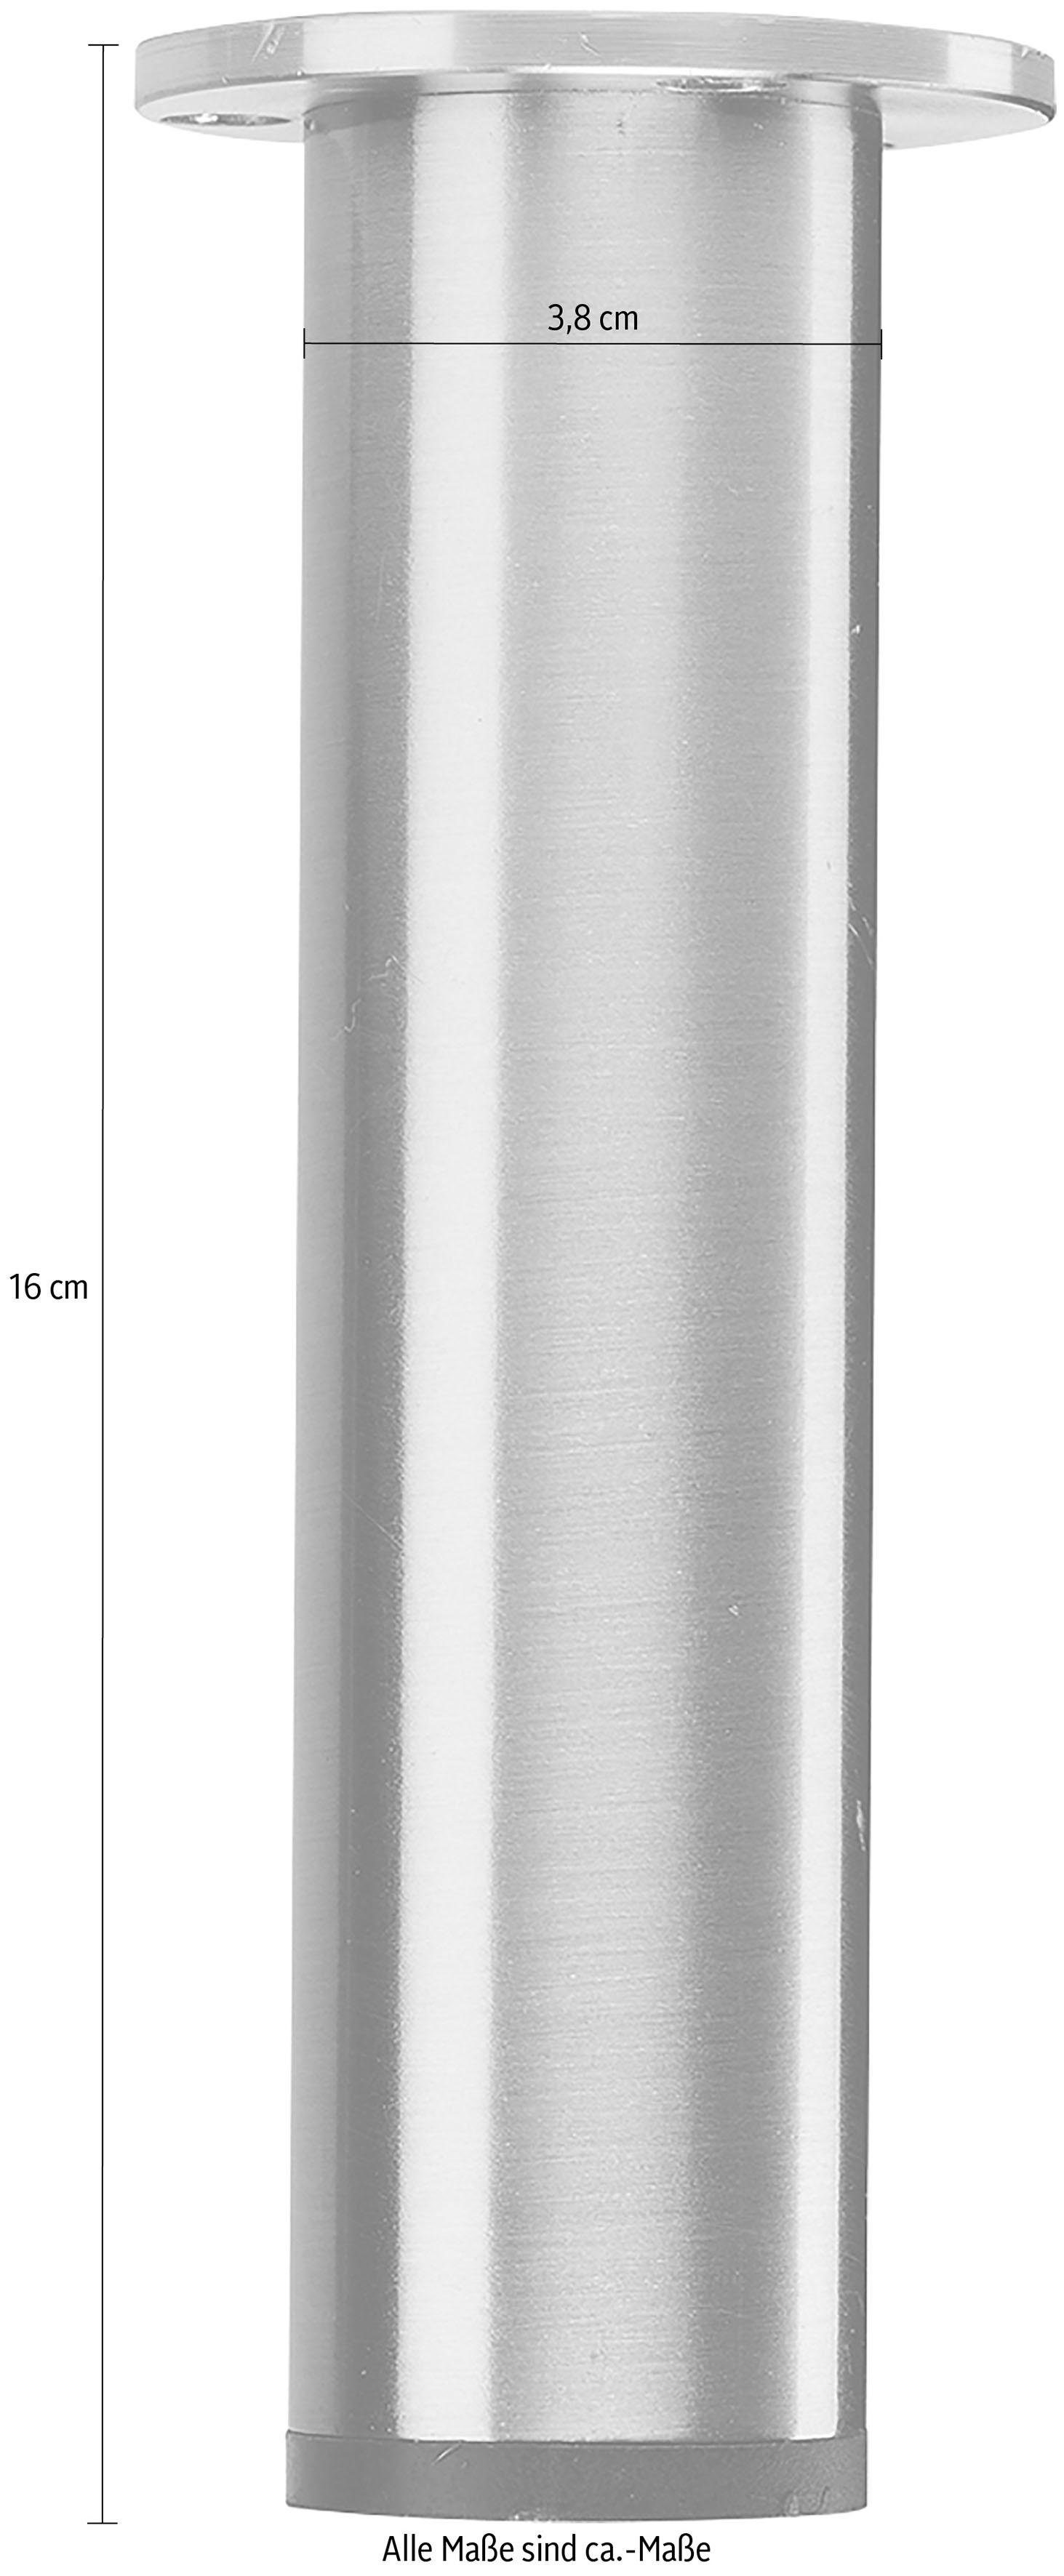 Designmöbel Hammel anpassungsbar rund Beine für Furniture gebürsteter Möbelfuß Stahl, Höhe: Mistral, Stützfuß, Mistral, 16 cm,